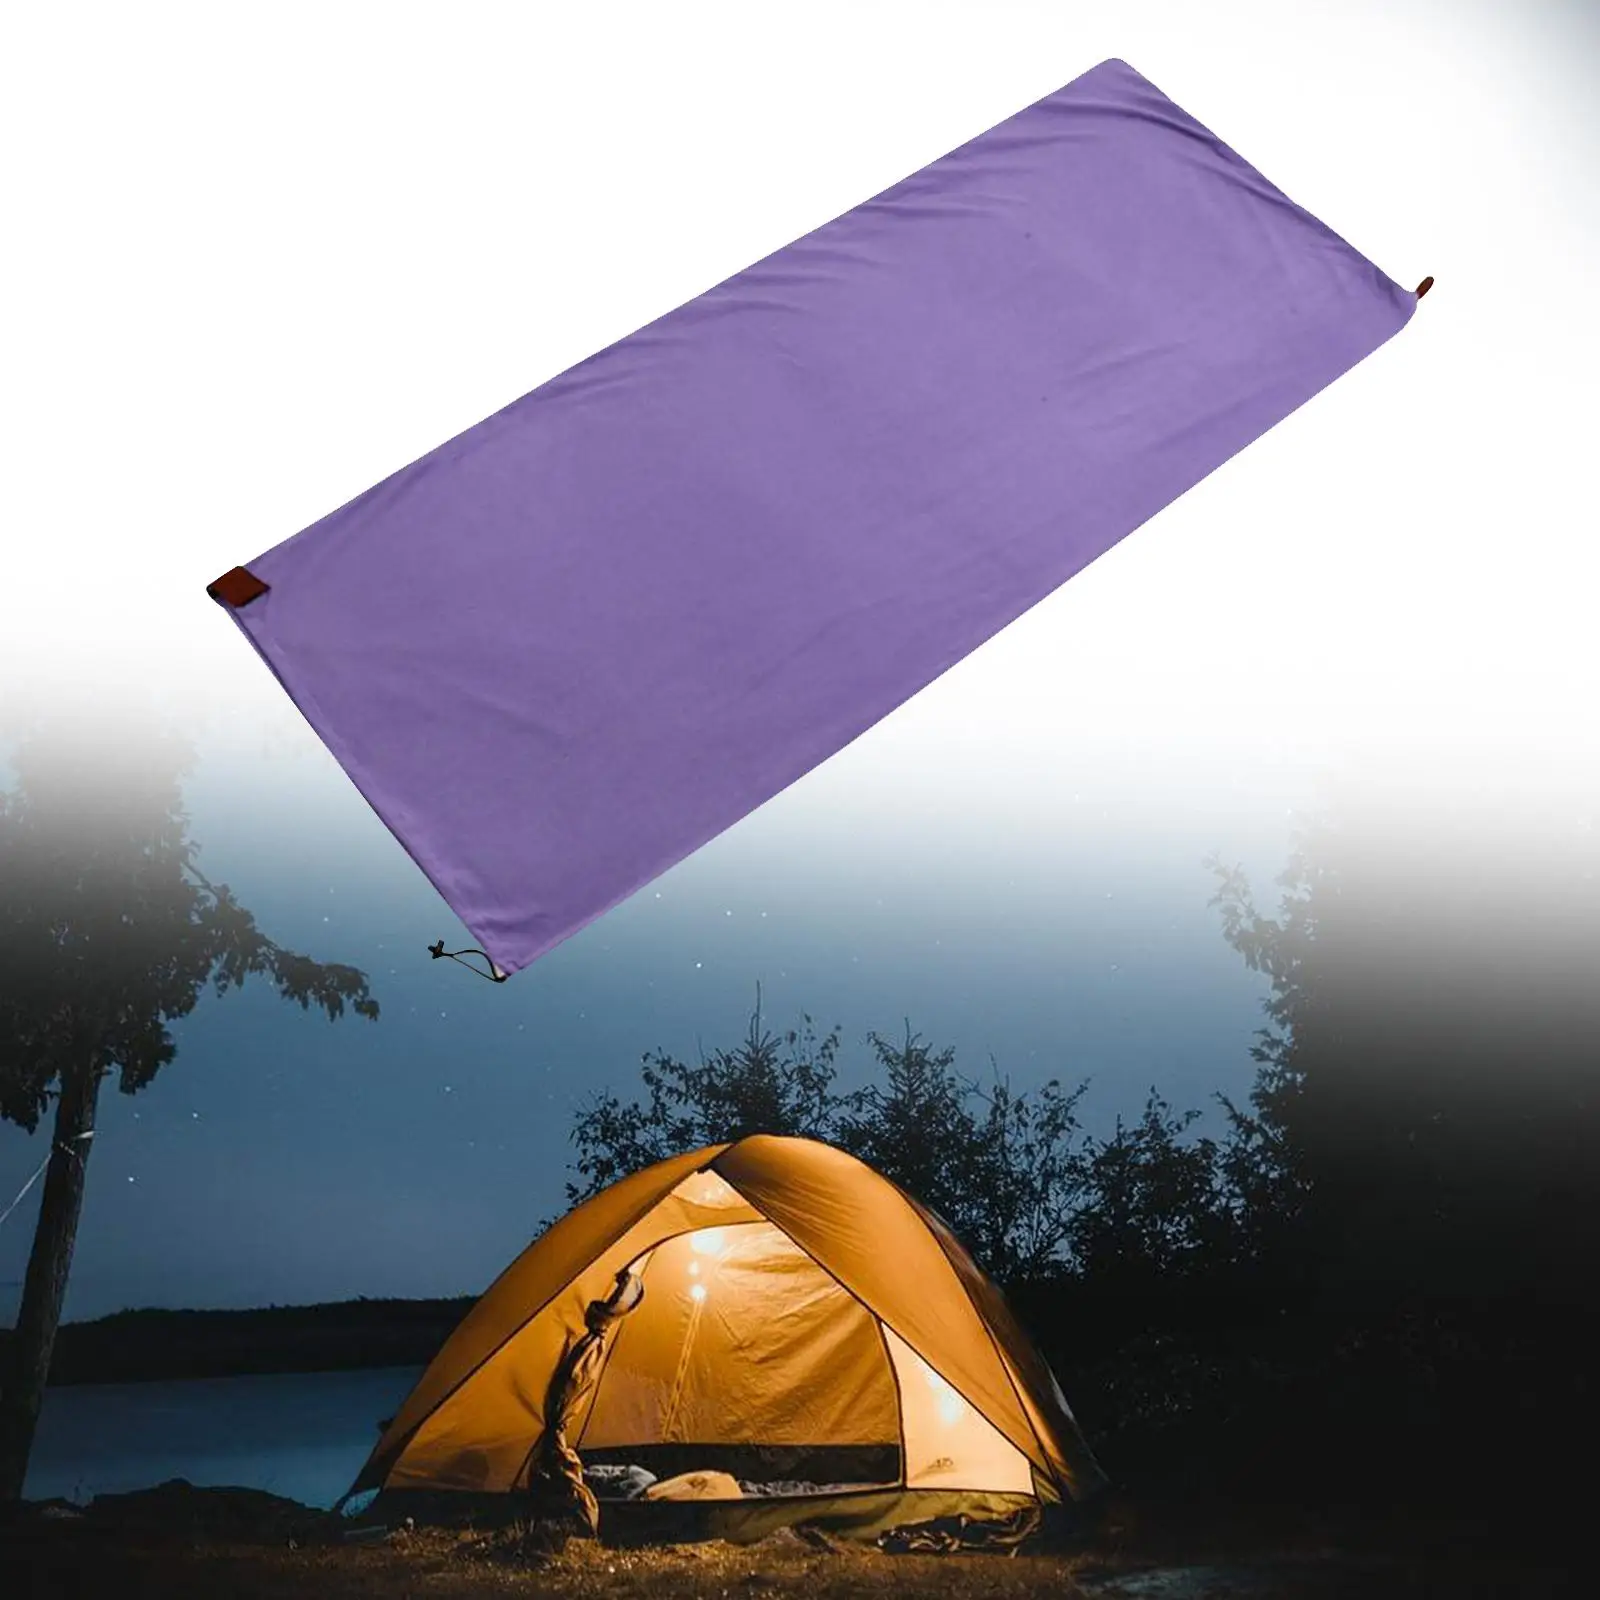 Sleeping Bag Liner Sleep Sheet Camping Blanket Practical Sturdy 180cm Length